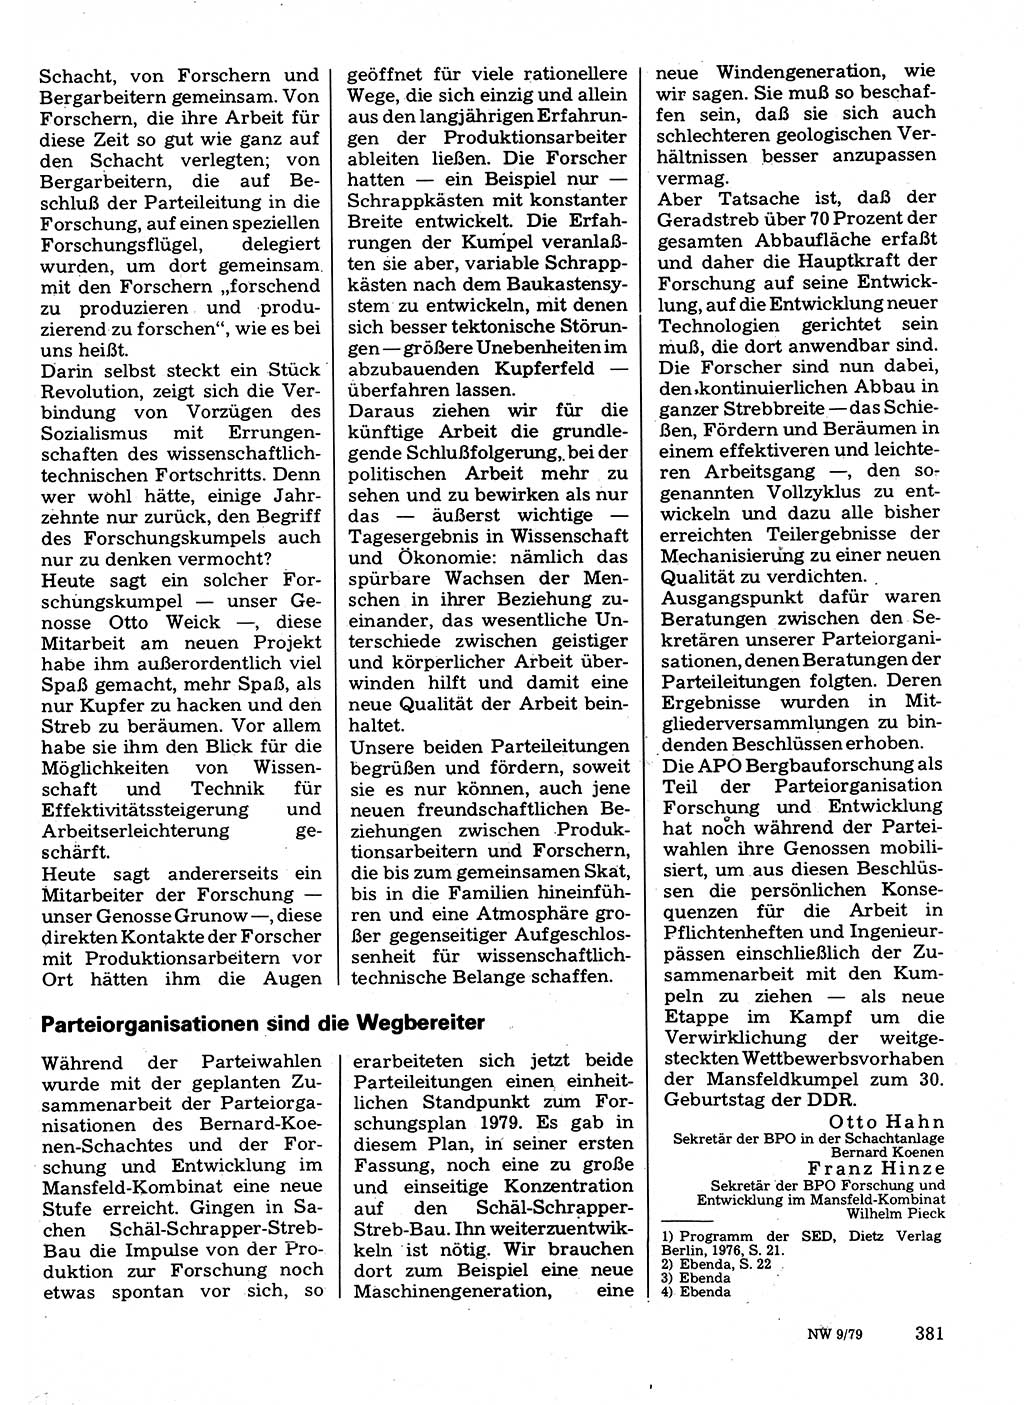 Neuer Weg (NW), Organ des Zentralkomitees (ZK) der SED (Sozialistische Einheitspartei Deutschlands) für Fragen des Parteilebens, 34. Jahrgang [Deutsche Demokratische Republik (DDR)] 1979, Seite 381 (NW ZK SED DDR 1979, S. 381)